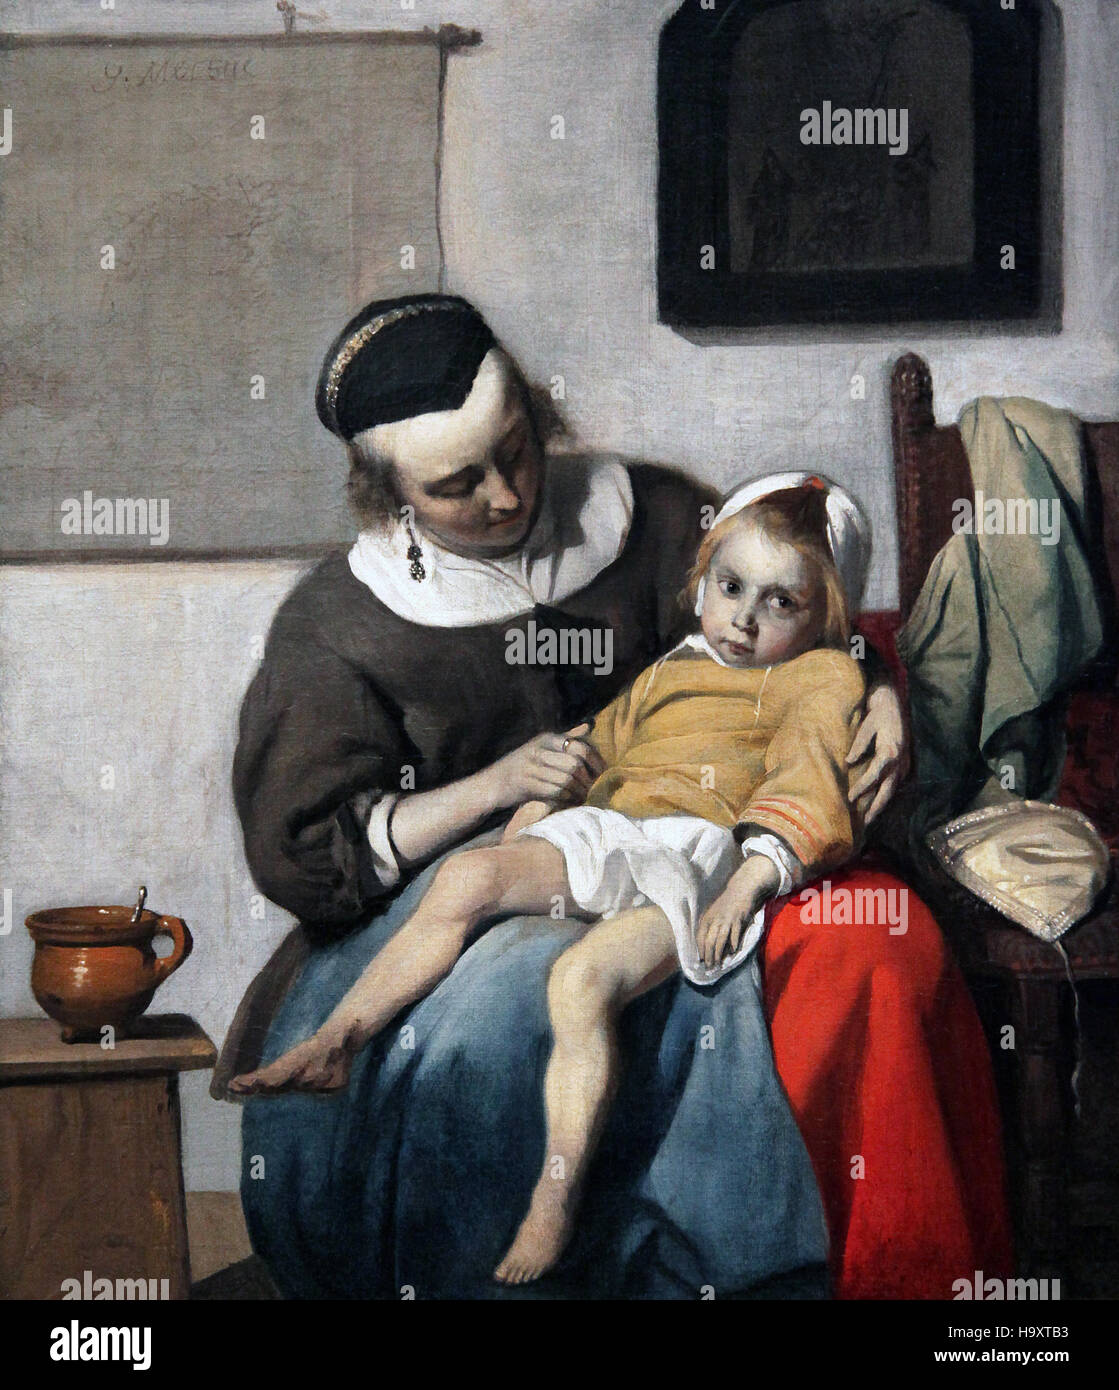 El niño enfermo 1663 por Gabriel Metsu 1629-1667 la plaga en Amsterdam en ese momento Foto de stock